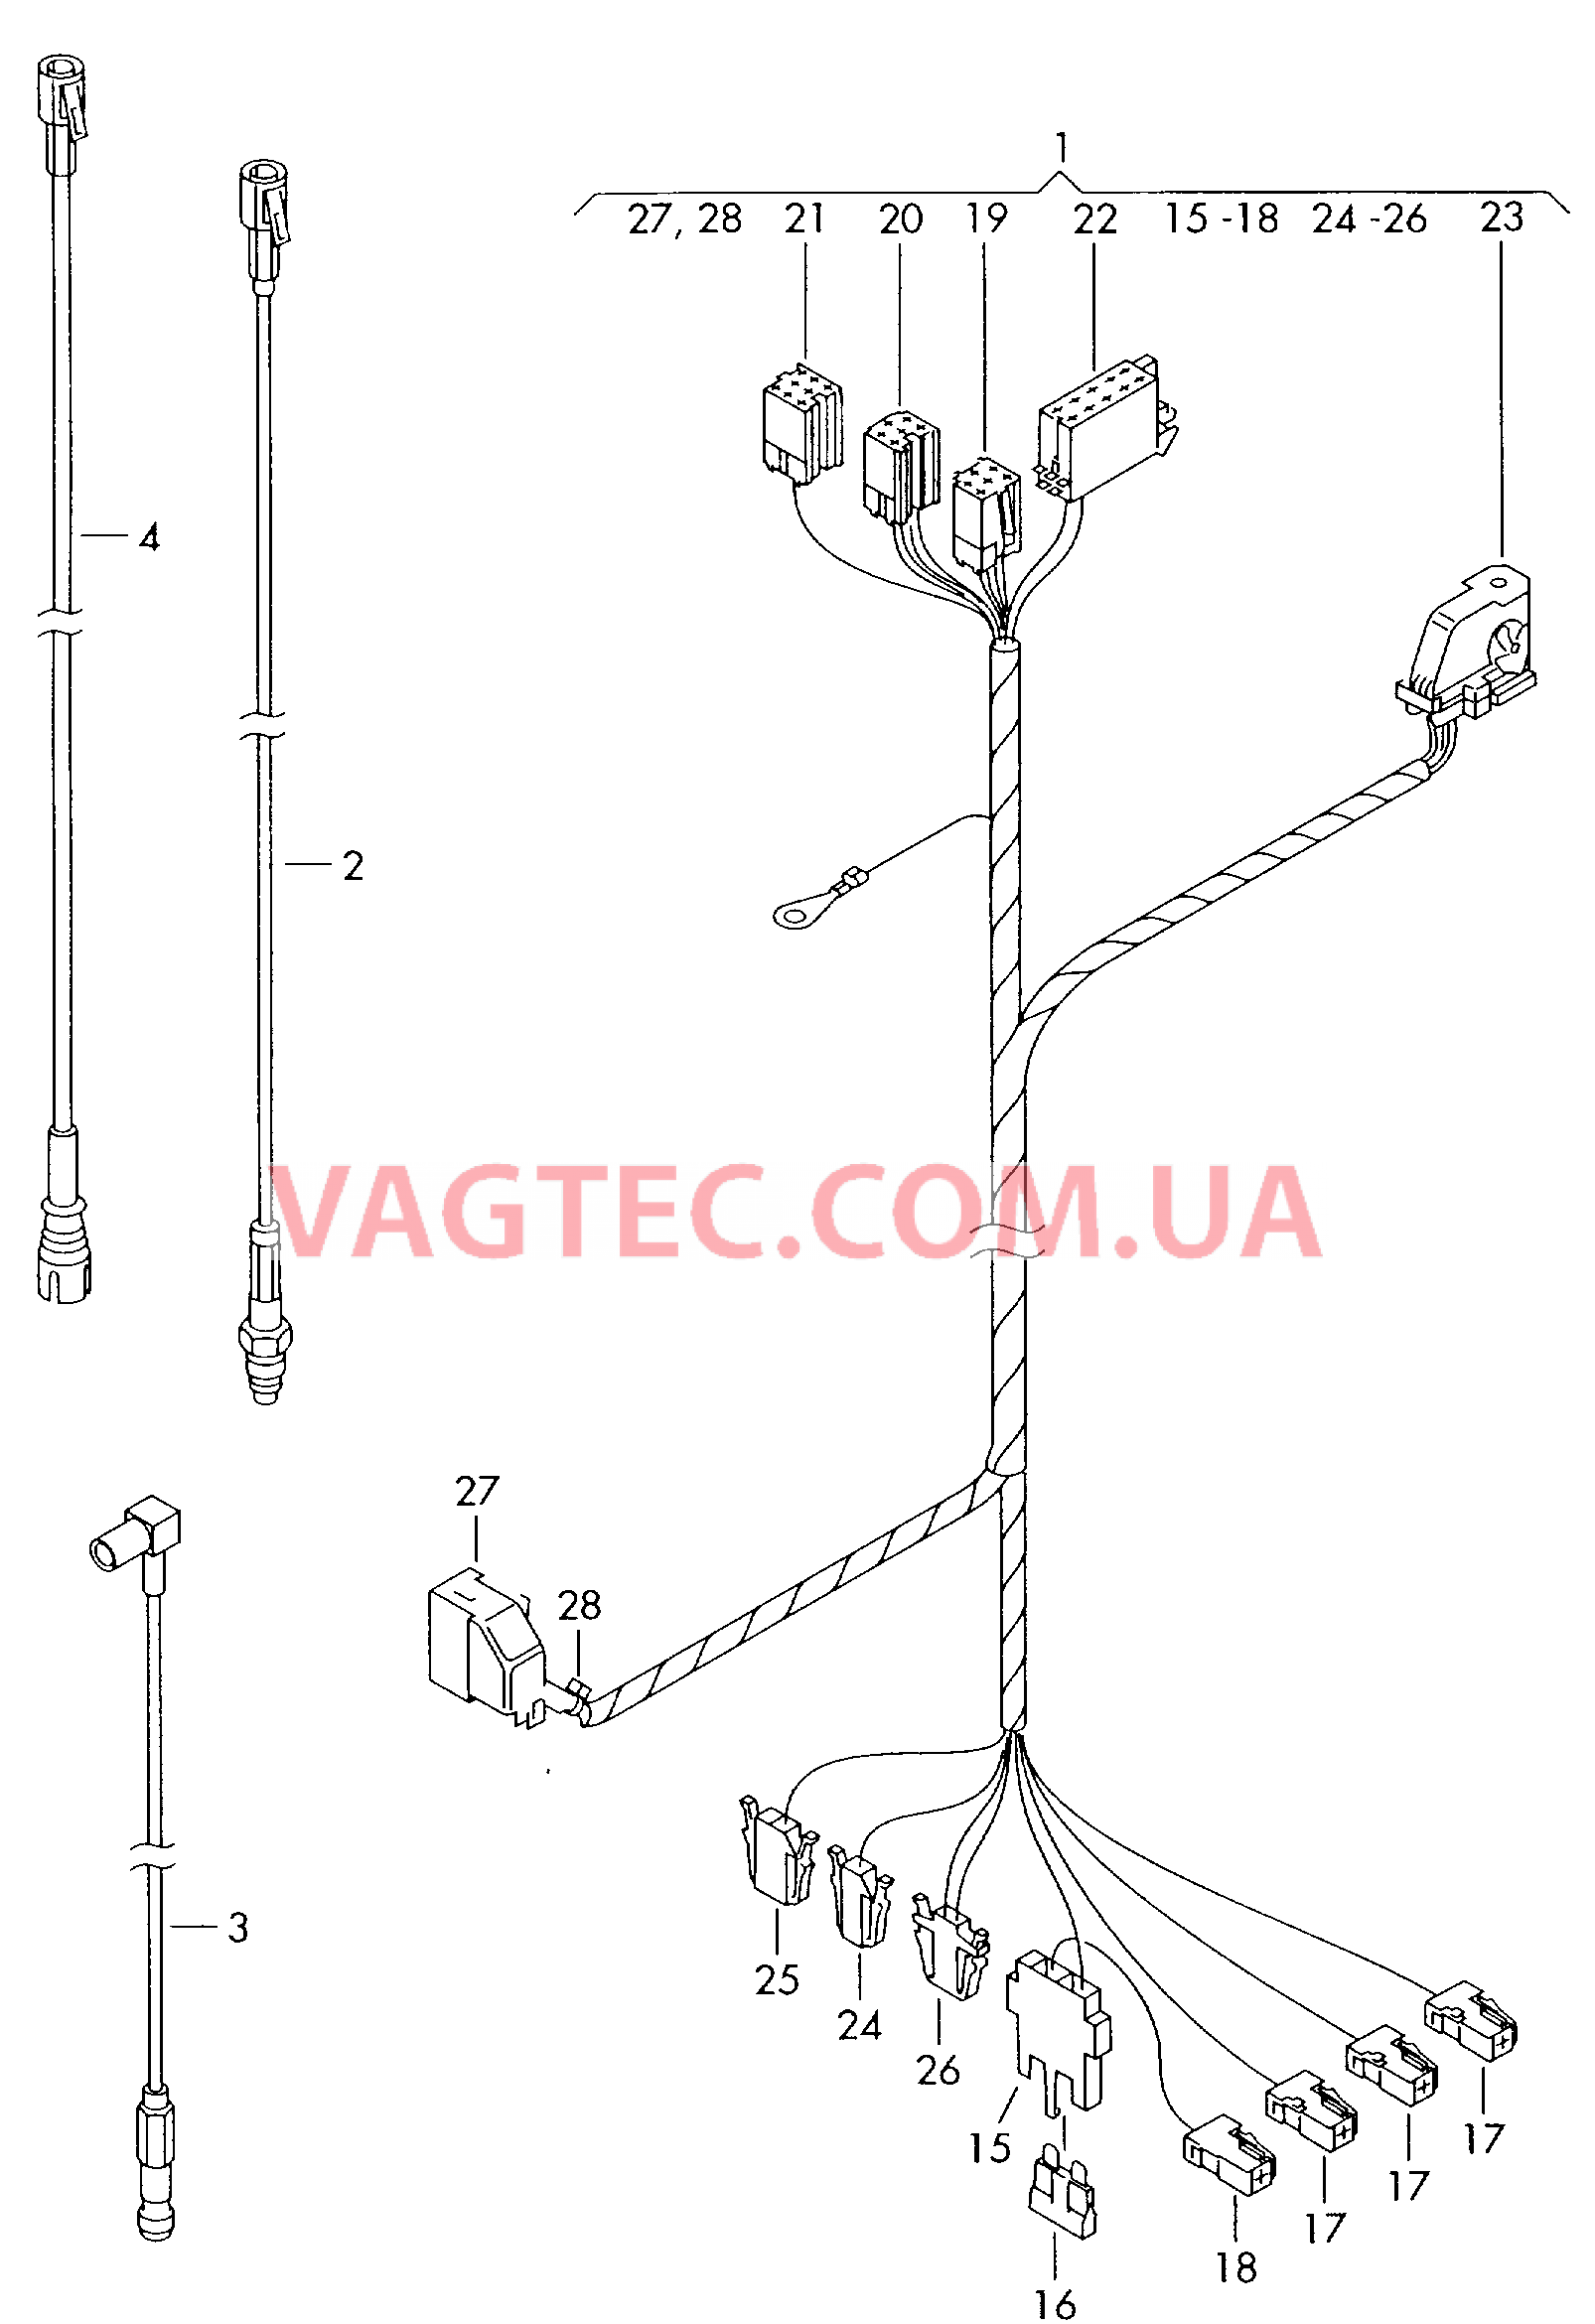 Жгут проводов системы навигации  Антенный кабель                   см. каталог:  для VOLKSWAGEN Transporter 2004